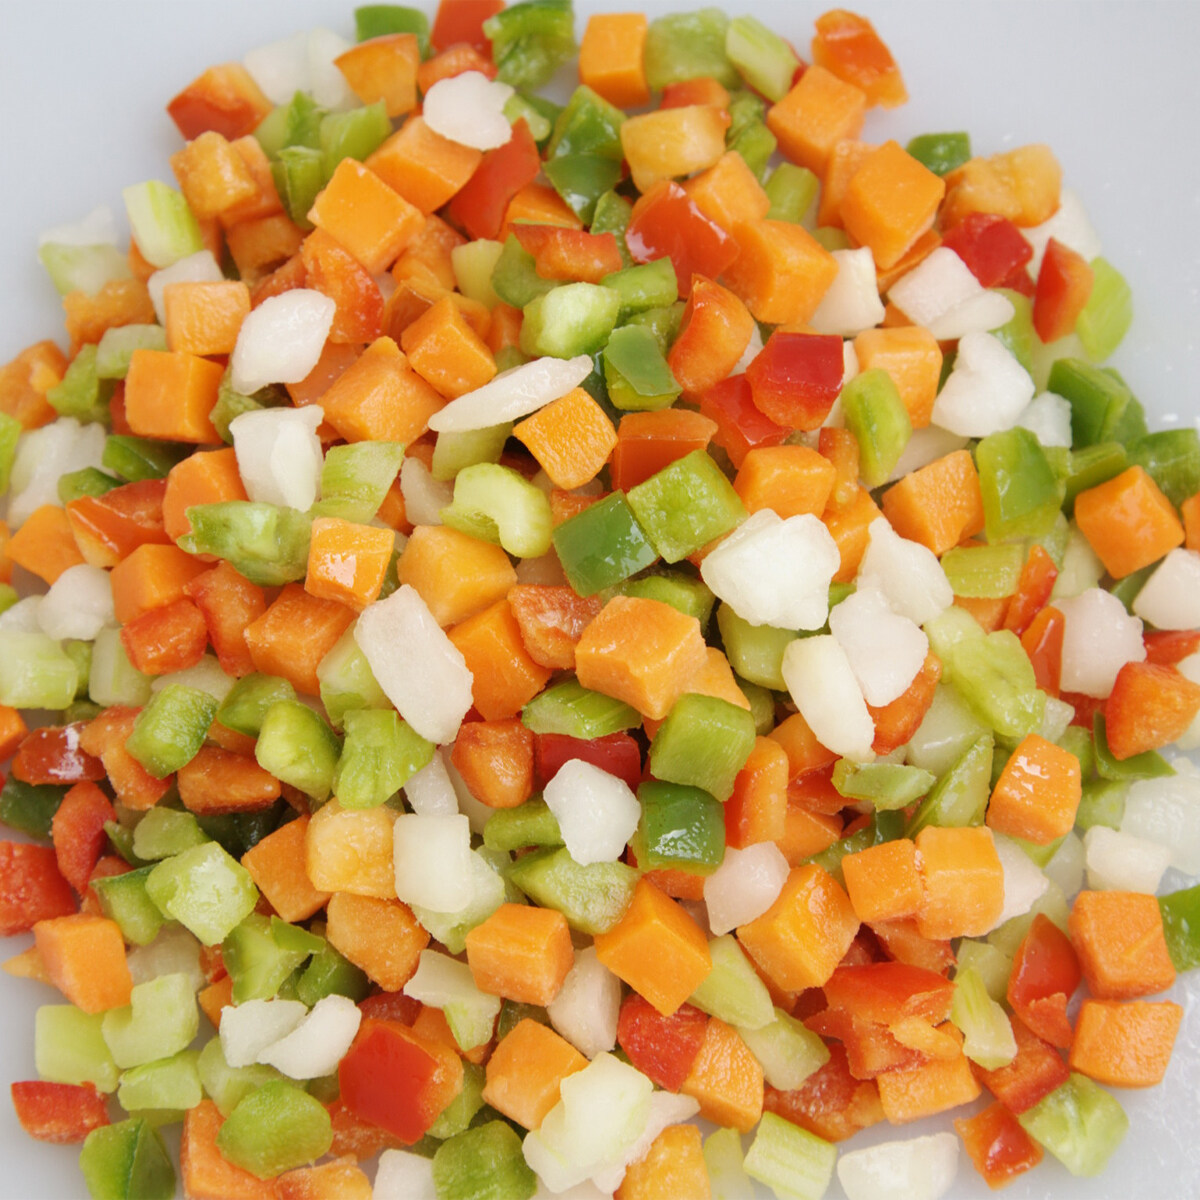 冷凍胡蘿蔔綠豌豆豆類蔬菜冷凍混合蔬菜